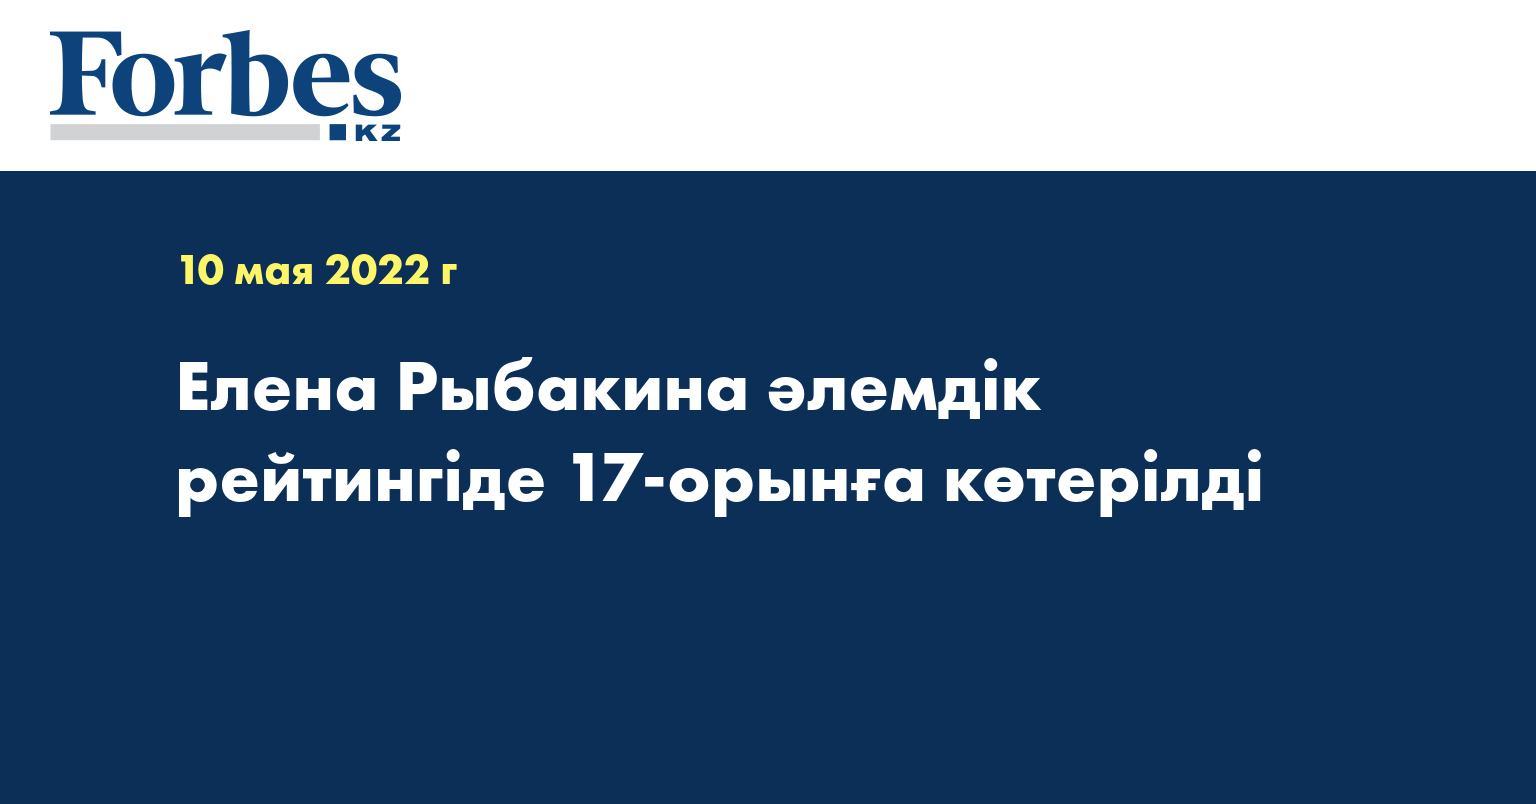 Елена Рыбакина әлемдік рейтингіде 17-орынға көтерілді